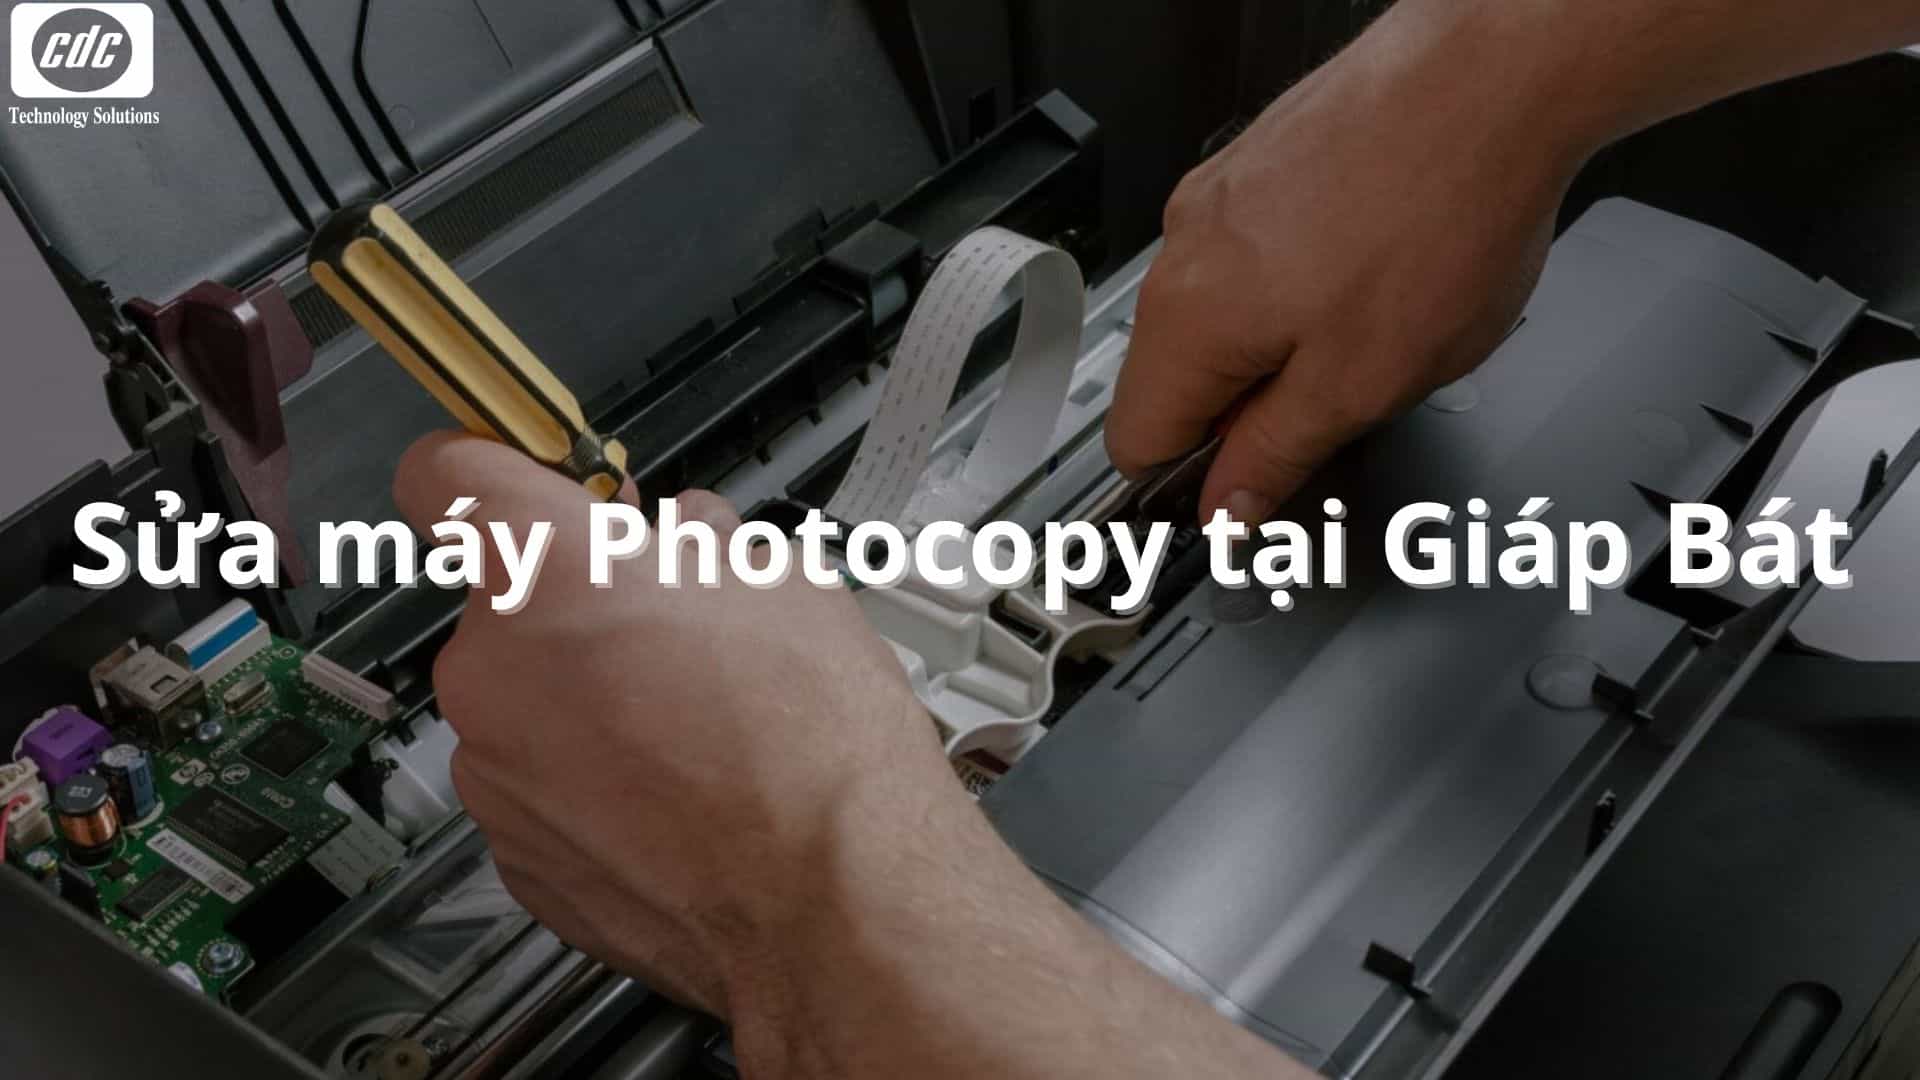 Sửa máy Photocopy tại Giáp Bát: Nhanh chóng, giá tốt 